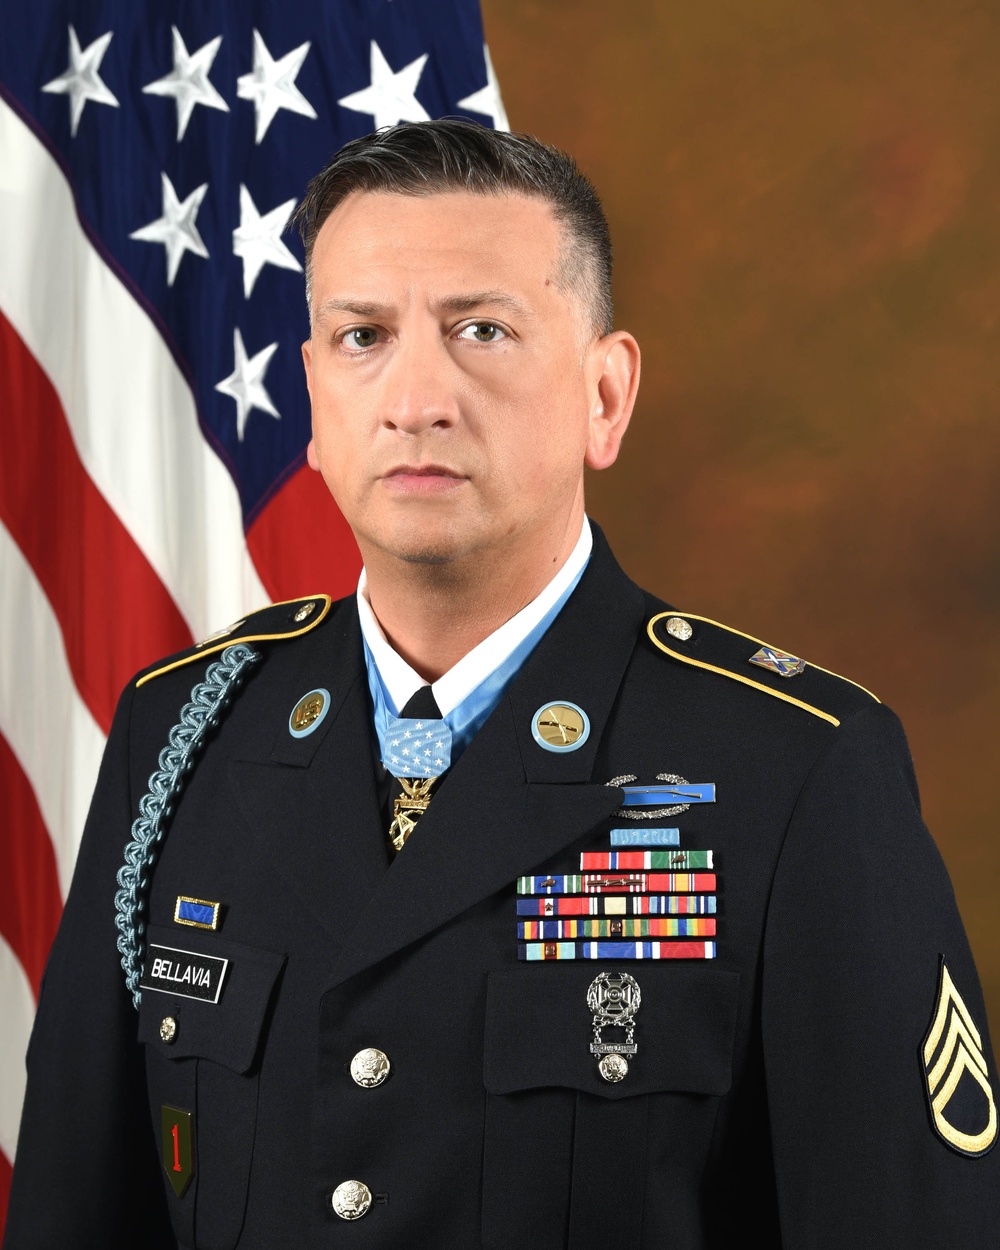 MOH Staff Sergeant David G. Bellavia